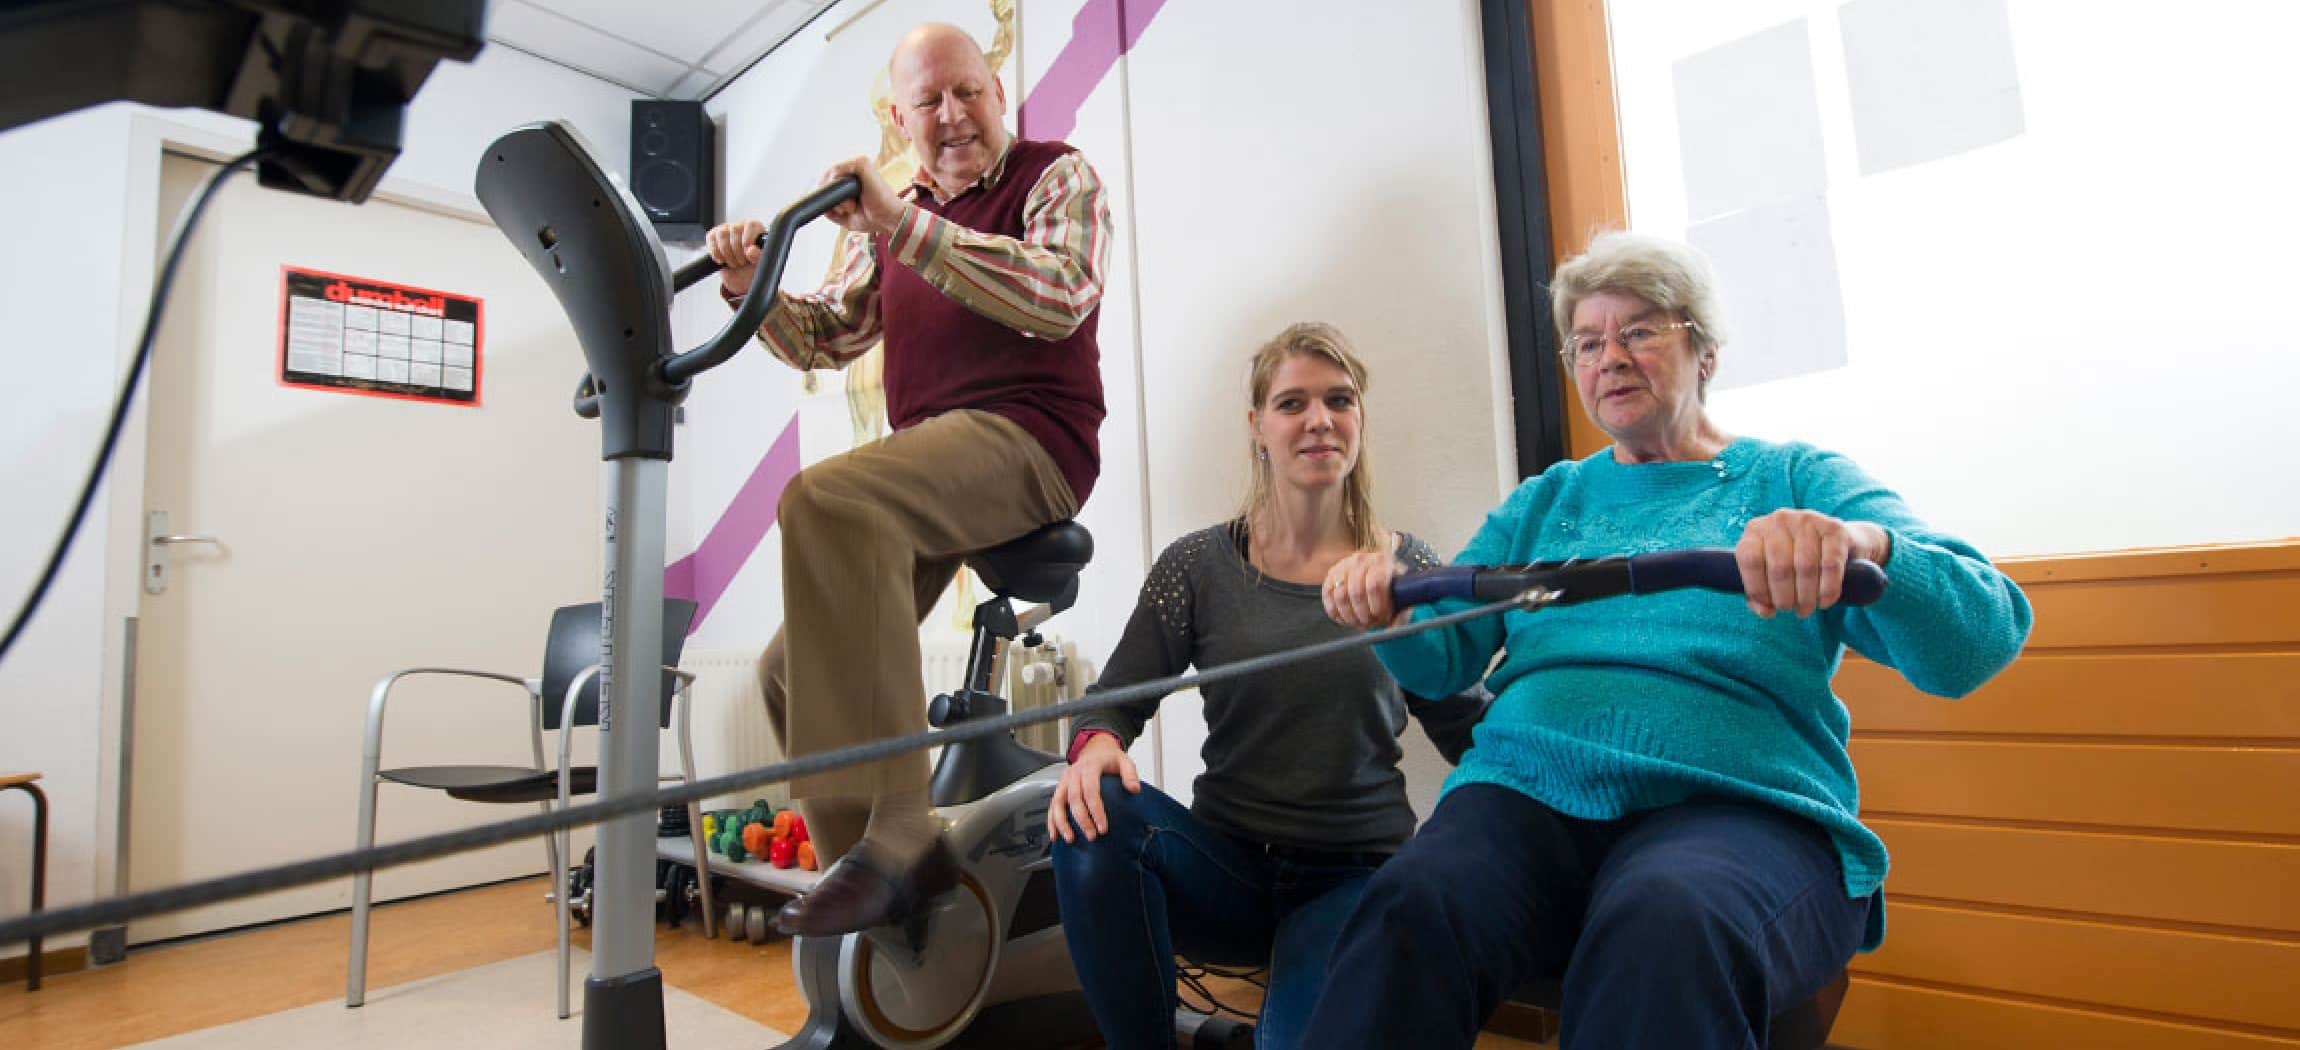 Fysiotherapie oefenen met roeitrainer en fiets fitness apparaat door 2 oudere mensen en fysiotherapeut